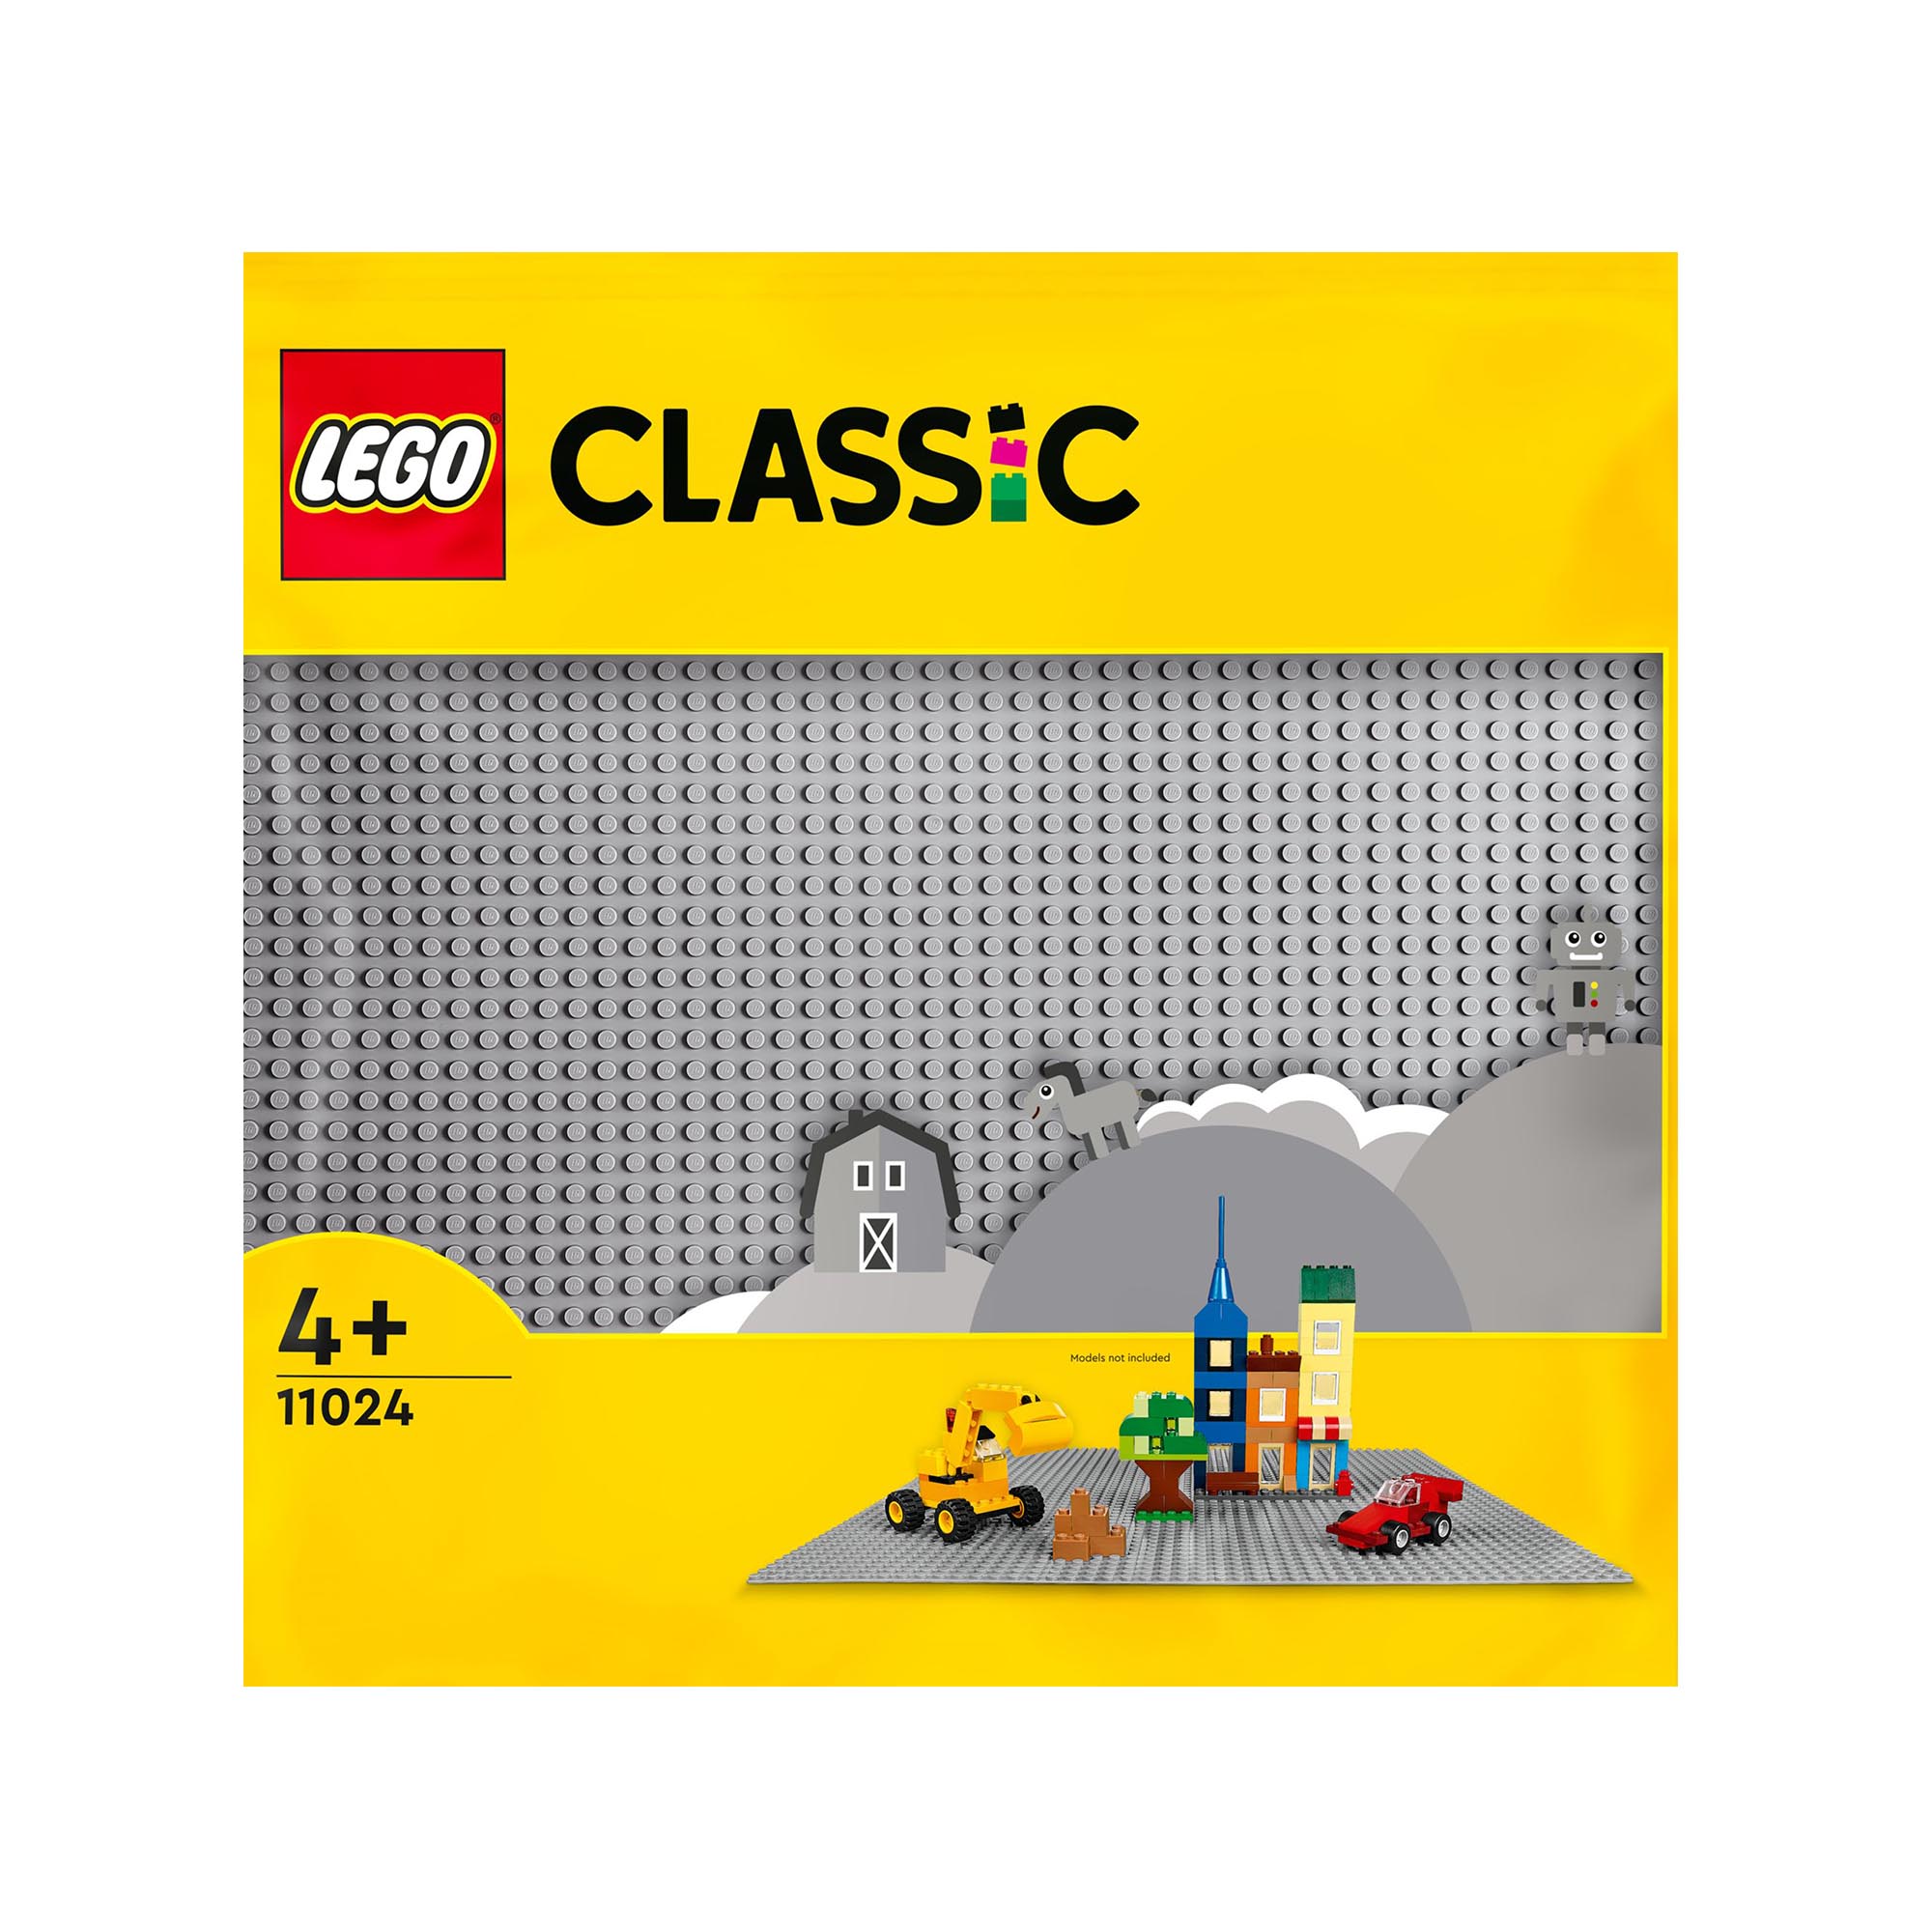 LEGO Classic Base Grigia, Tavola per Costruzioni Quadrata con 48x48 Bottoncini,  11024, , large